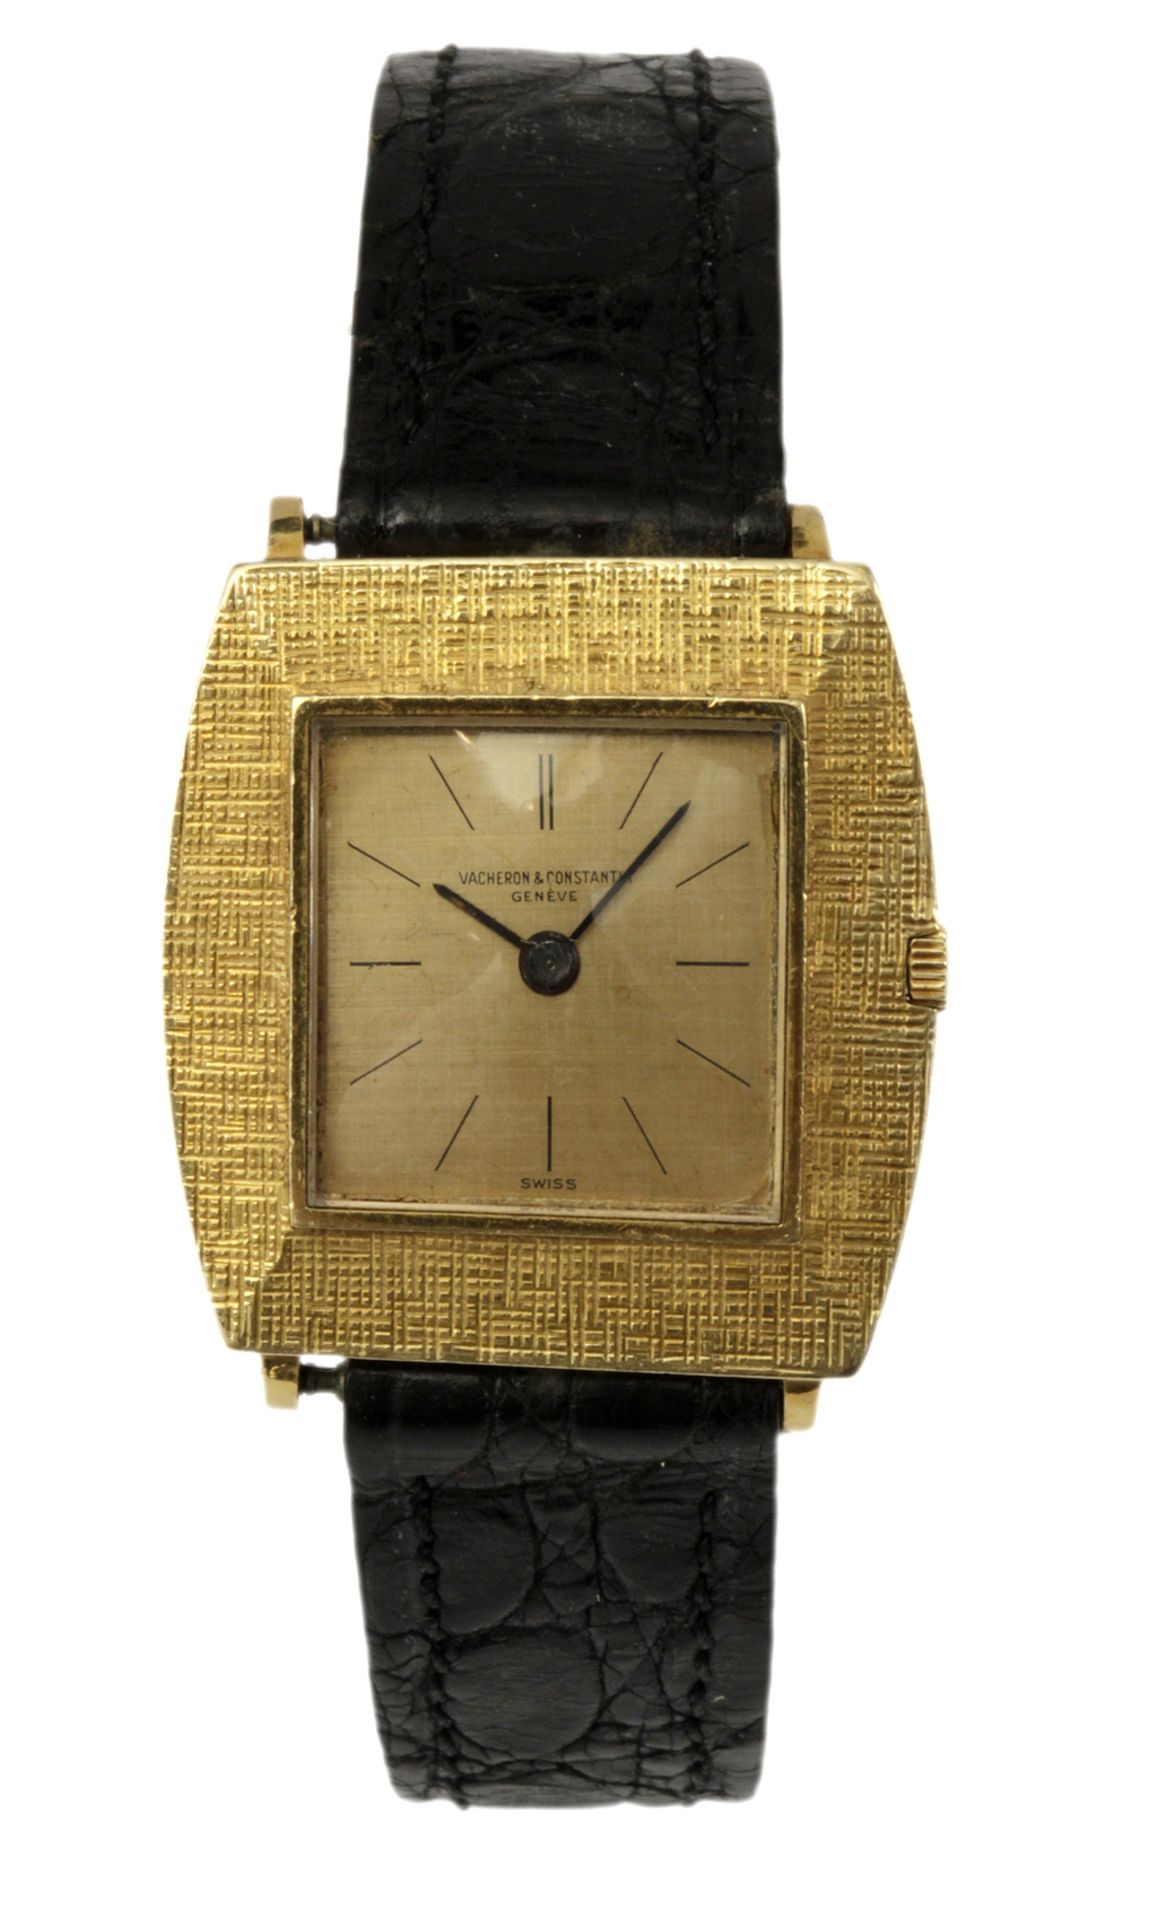 Vacheron & Constantin circa 1960. An 18 ct. yellow gold wristwatch for gentlemen